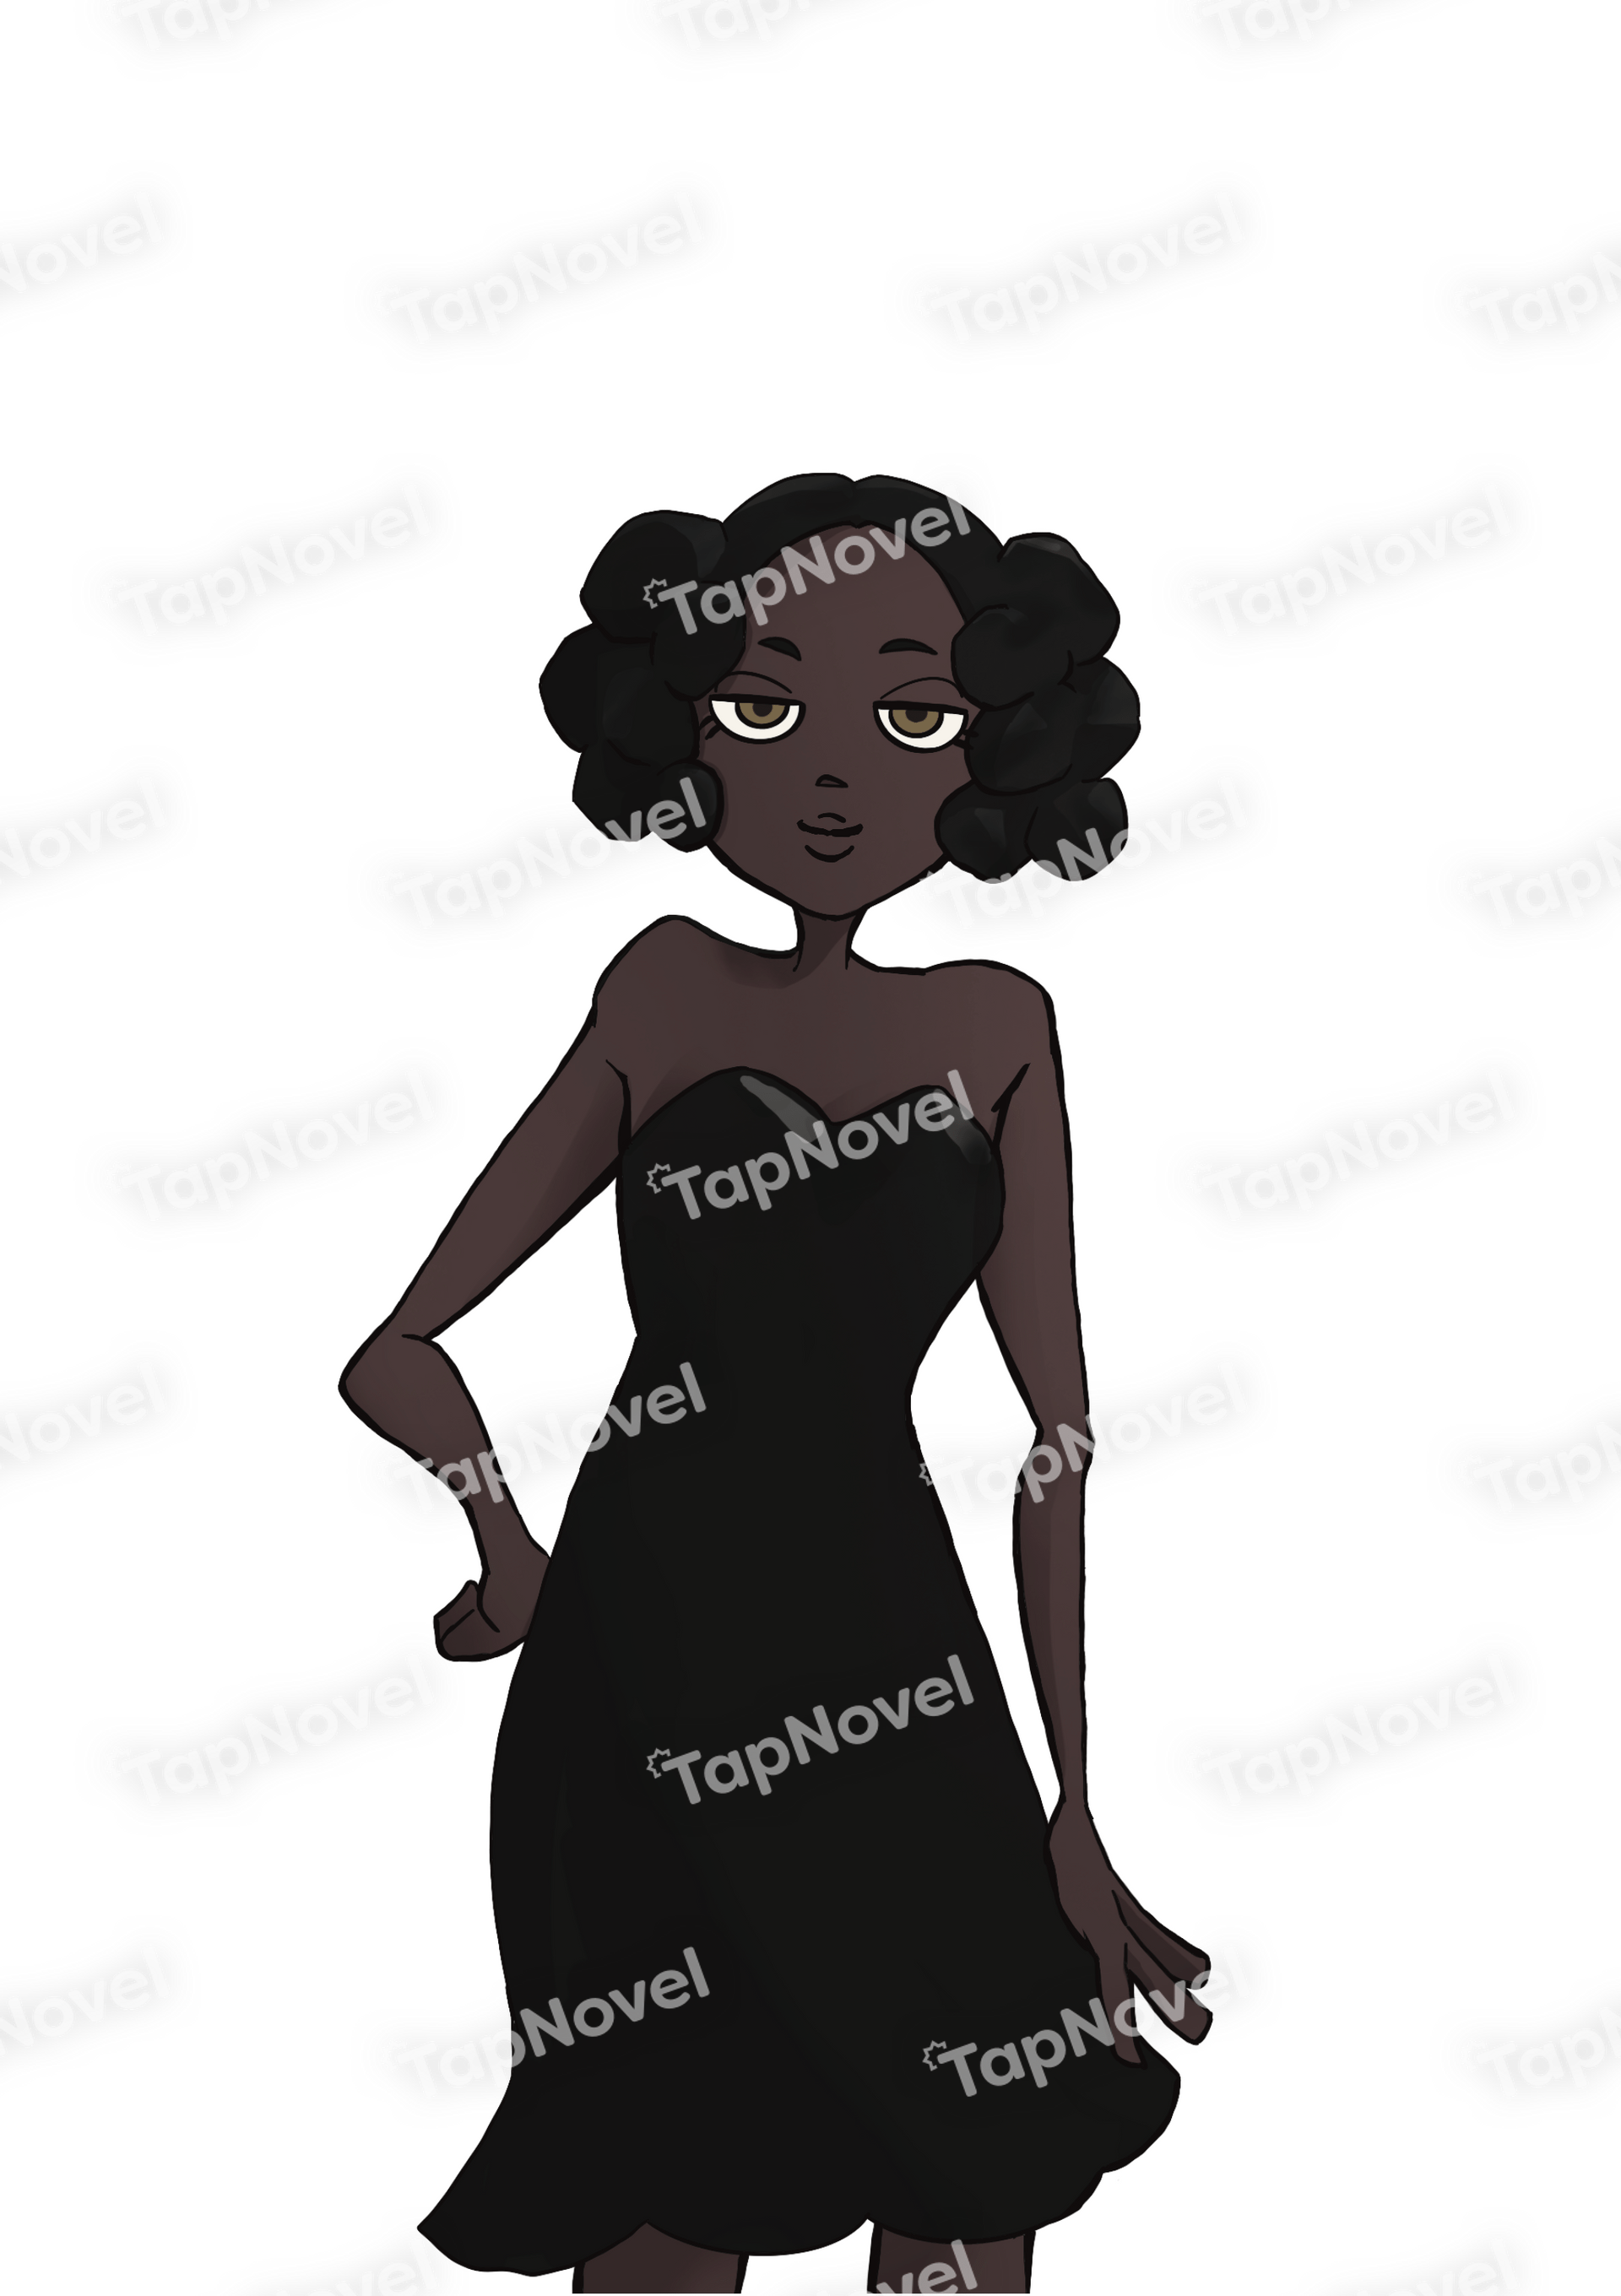 黒ドレス